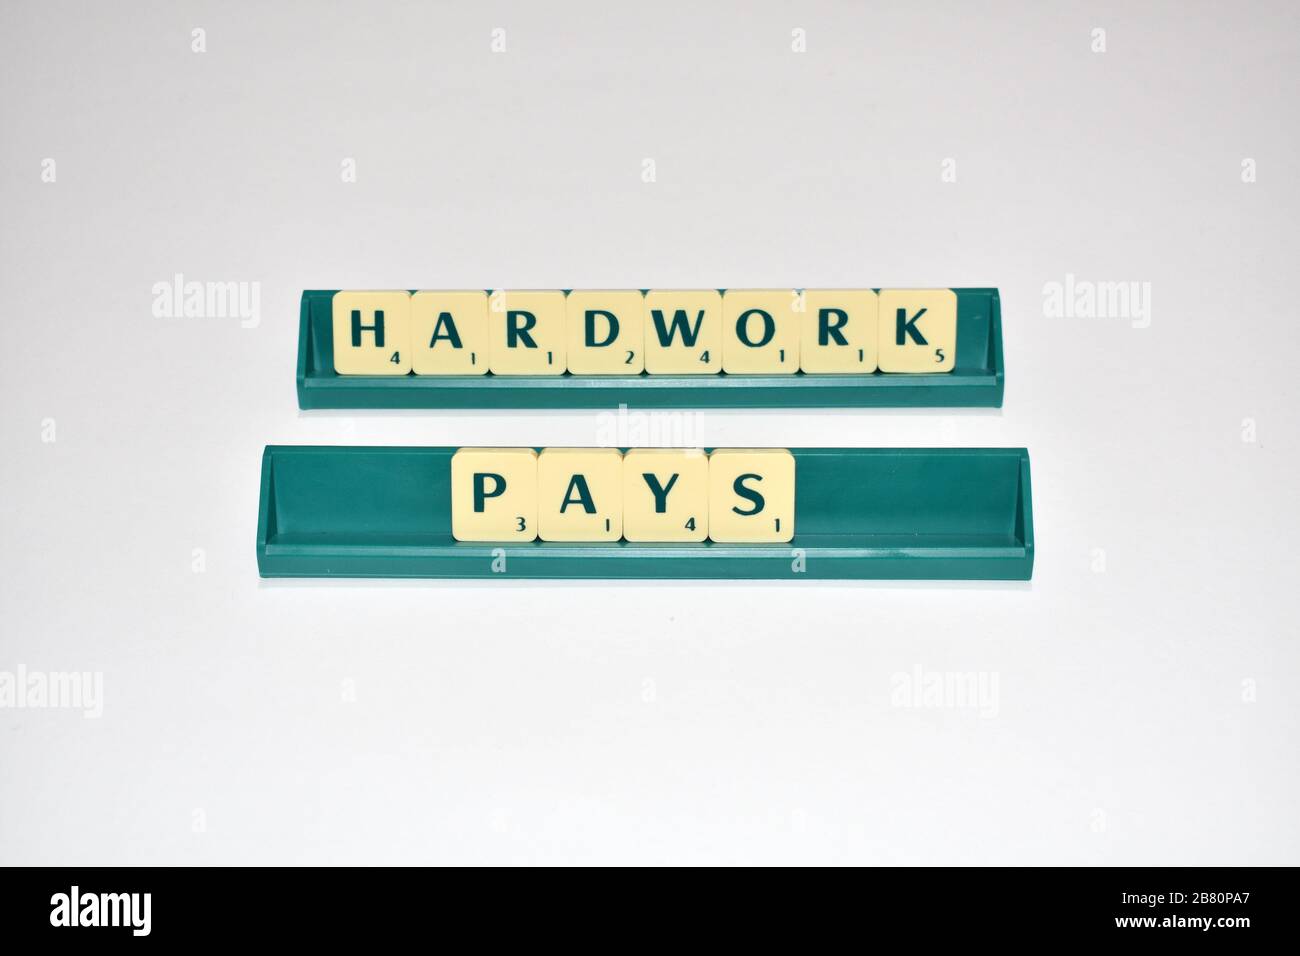 Le piastrelle Scrabble spell out hardwork Pays. Citazione motivazionale blocchi Scrabble lettere Grigio sfondo citazione di vita indurre alfabeto. Foto Stock